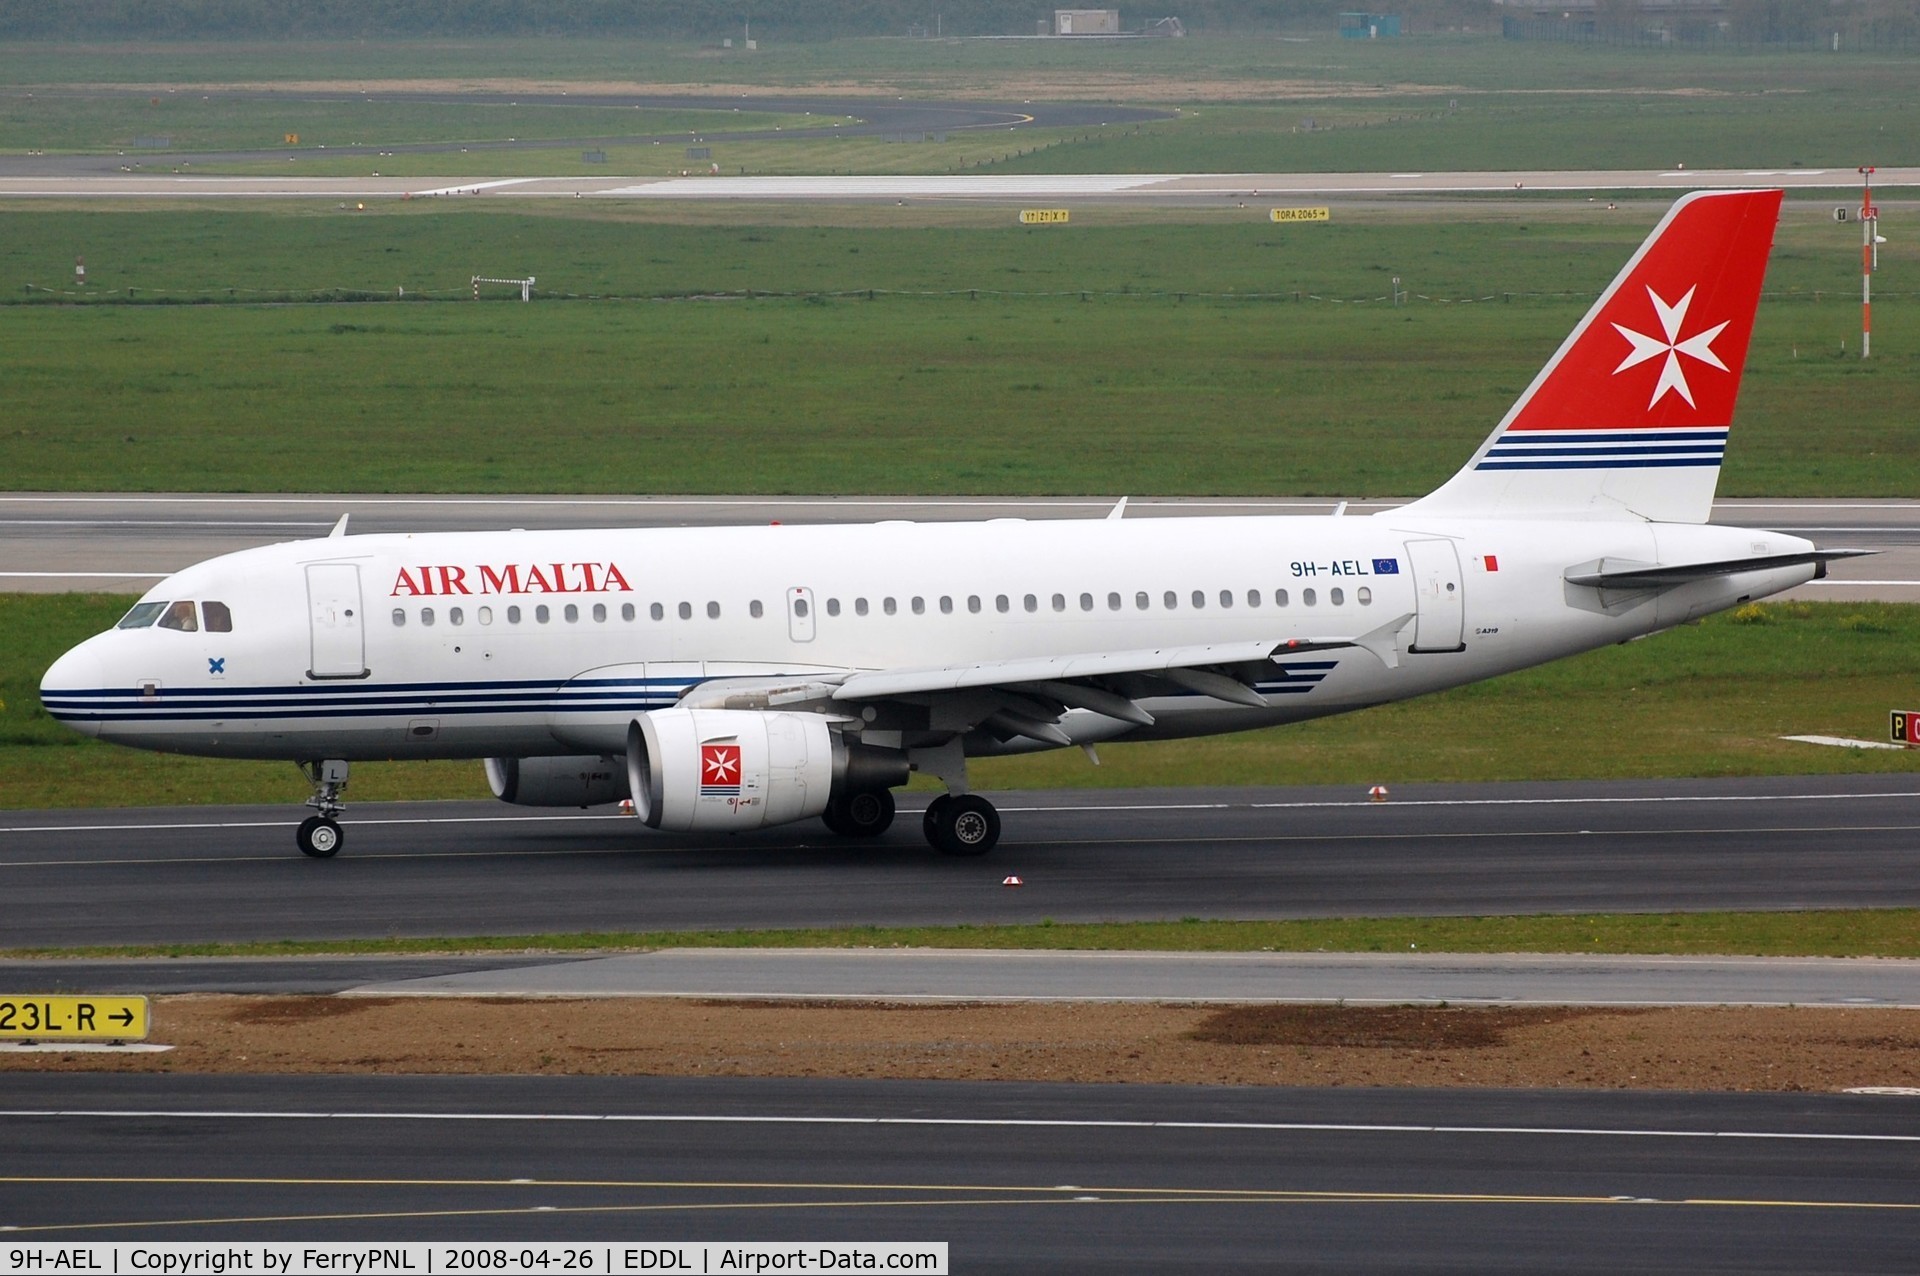 9H-AEL, 2004 Airbus A319-111 C/N 2332, Air Malta A319. plane went to Volotea in 2016.